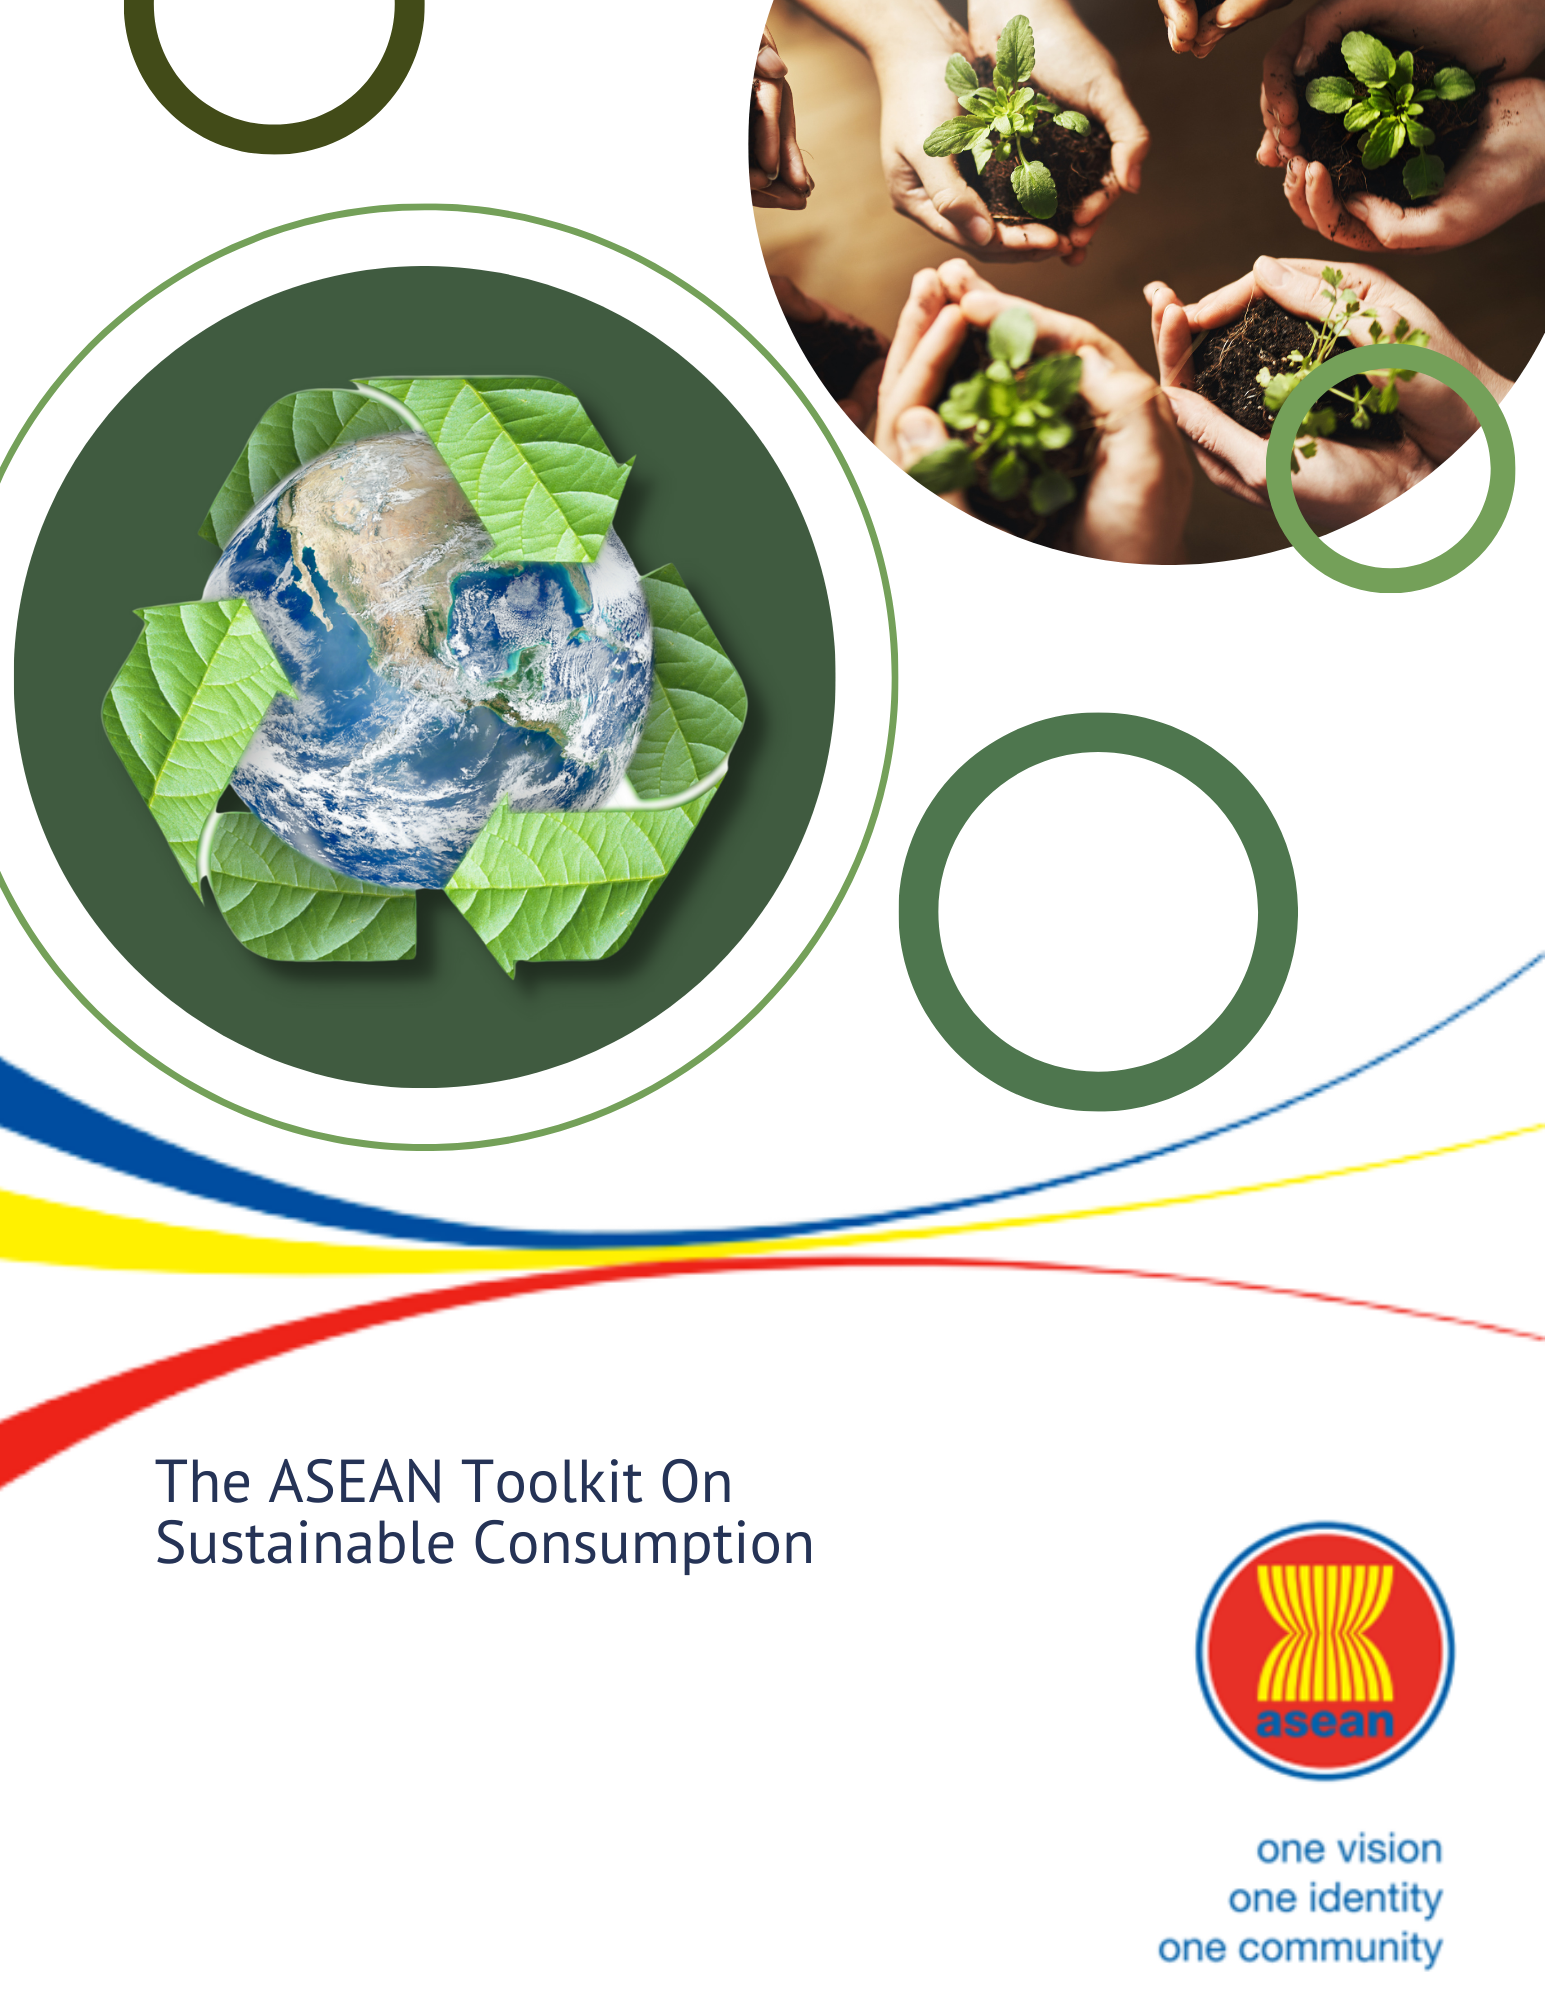 Asean Toolkit on Sustainable Consumption